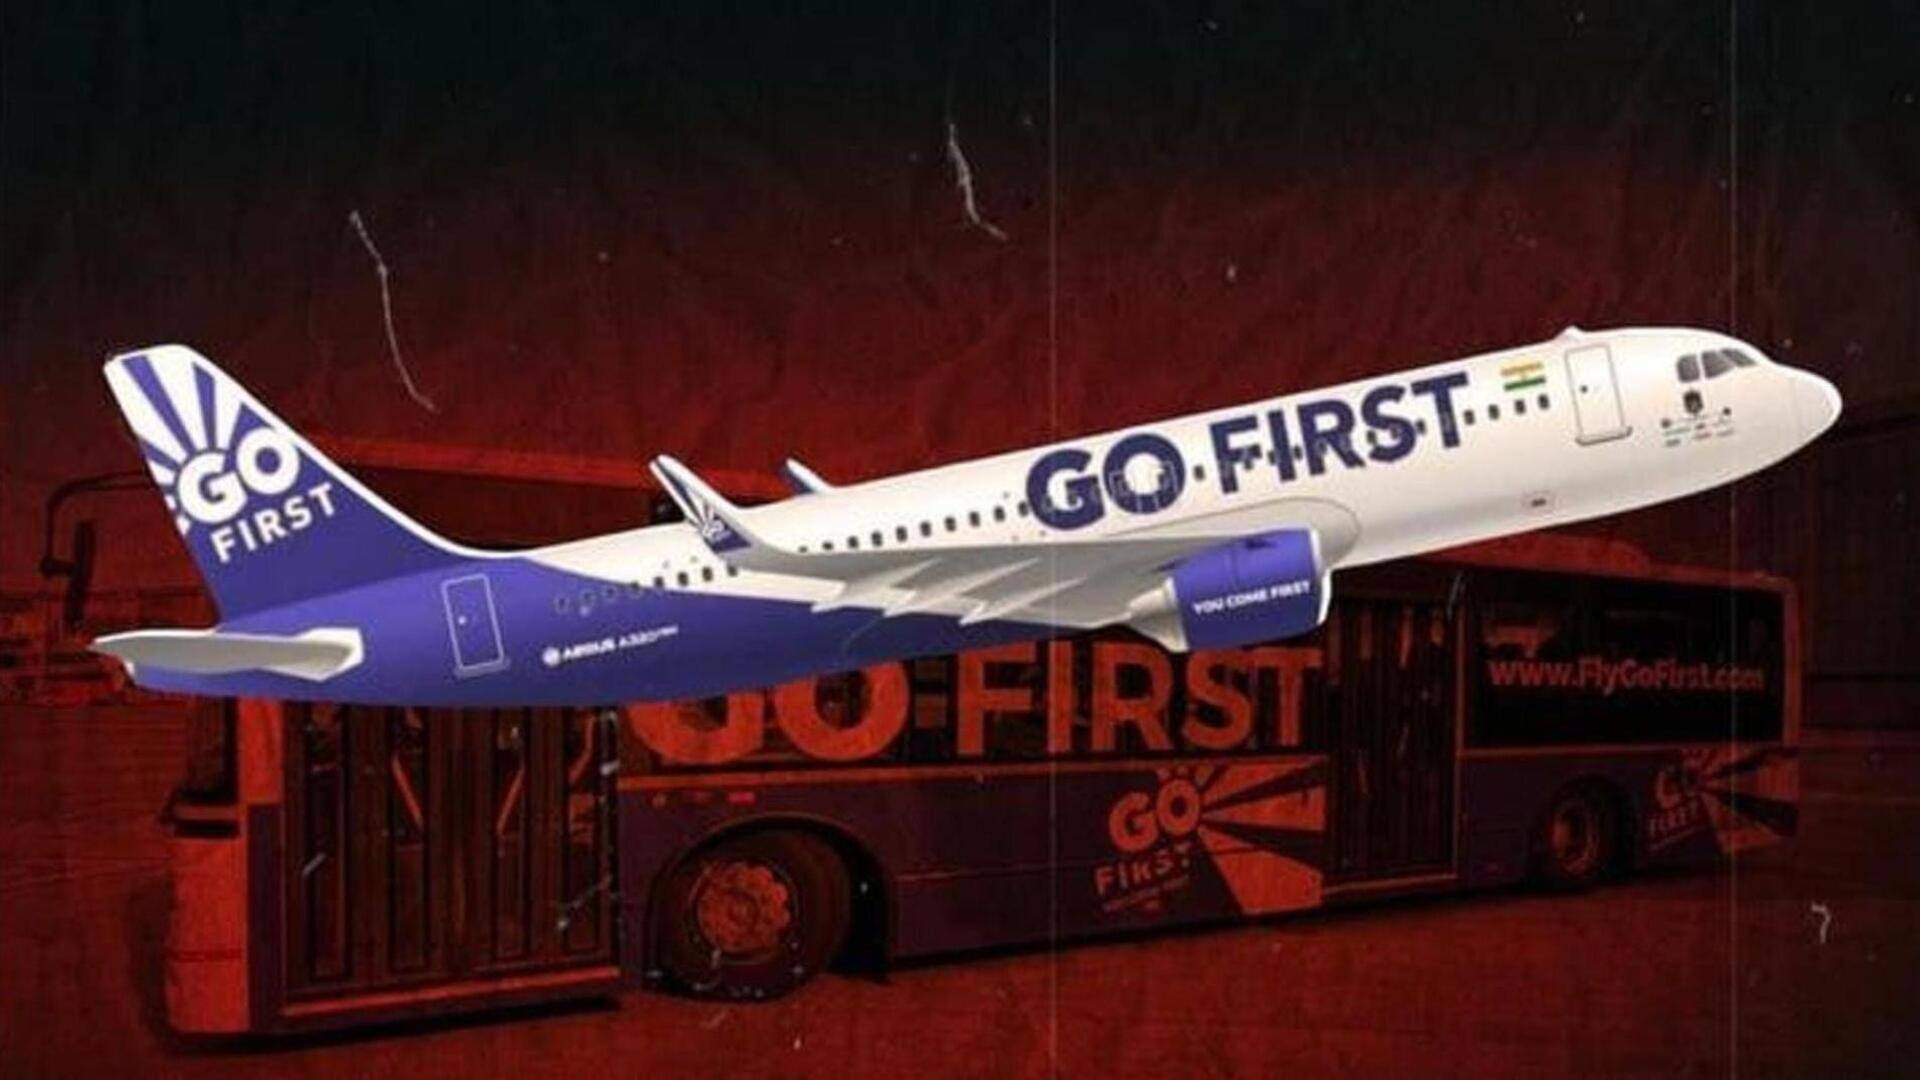 #NewsBytesExplainer: 18 साल पुरानी एयरलाइन गो फर्स्ट की क्यों हुई क्रैश लैंडिंग? जानें पूरी कहानी